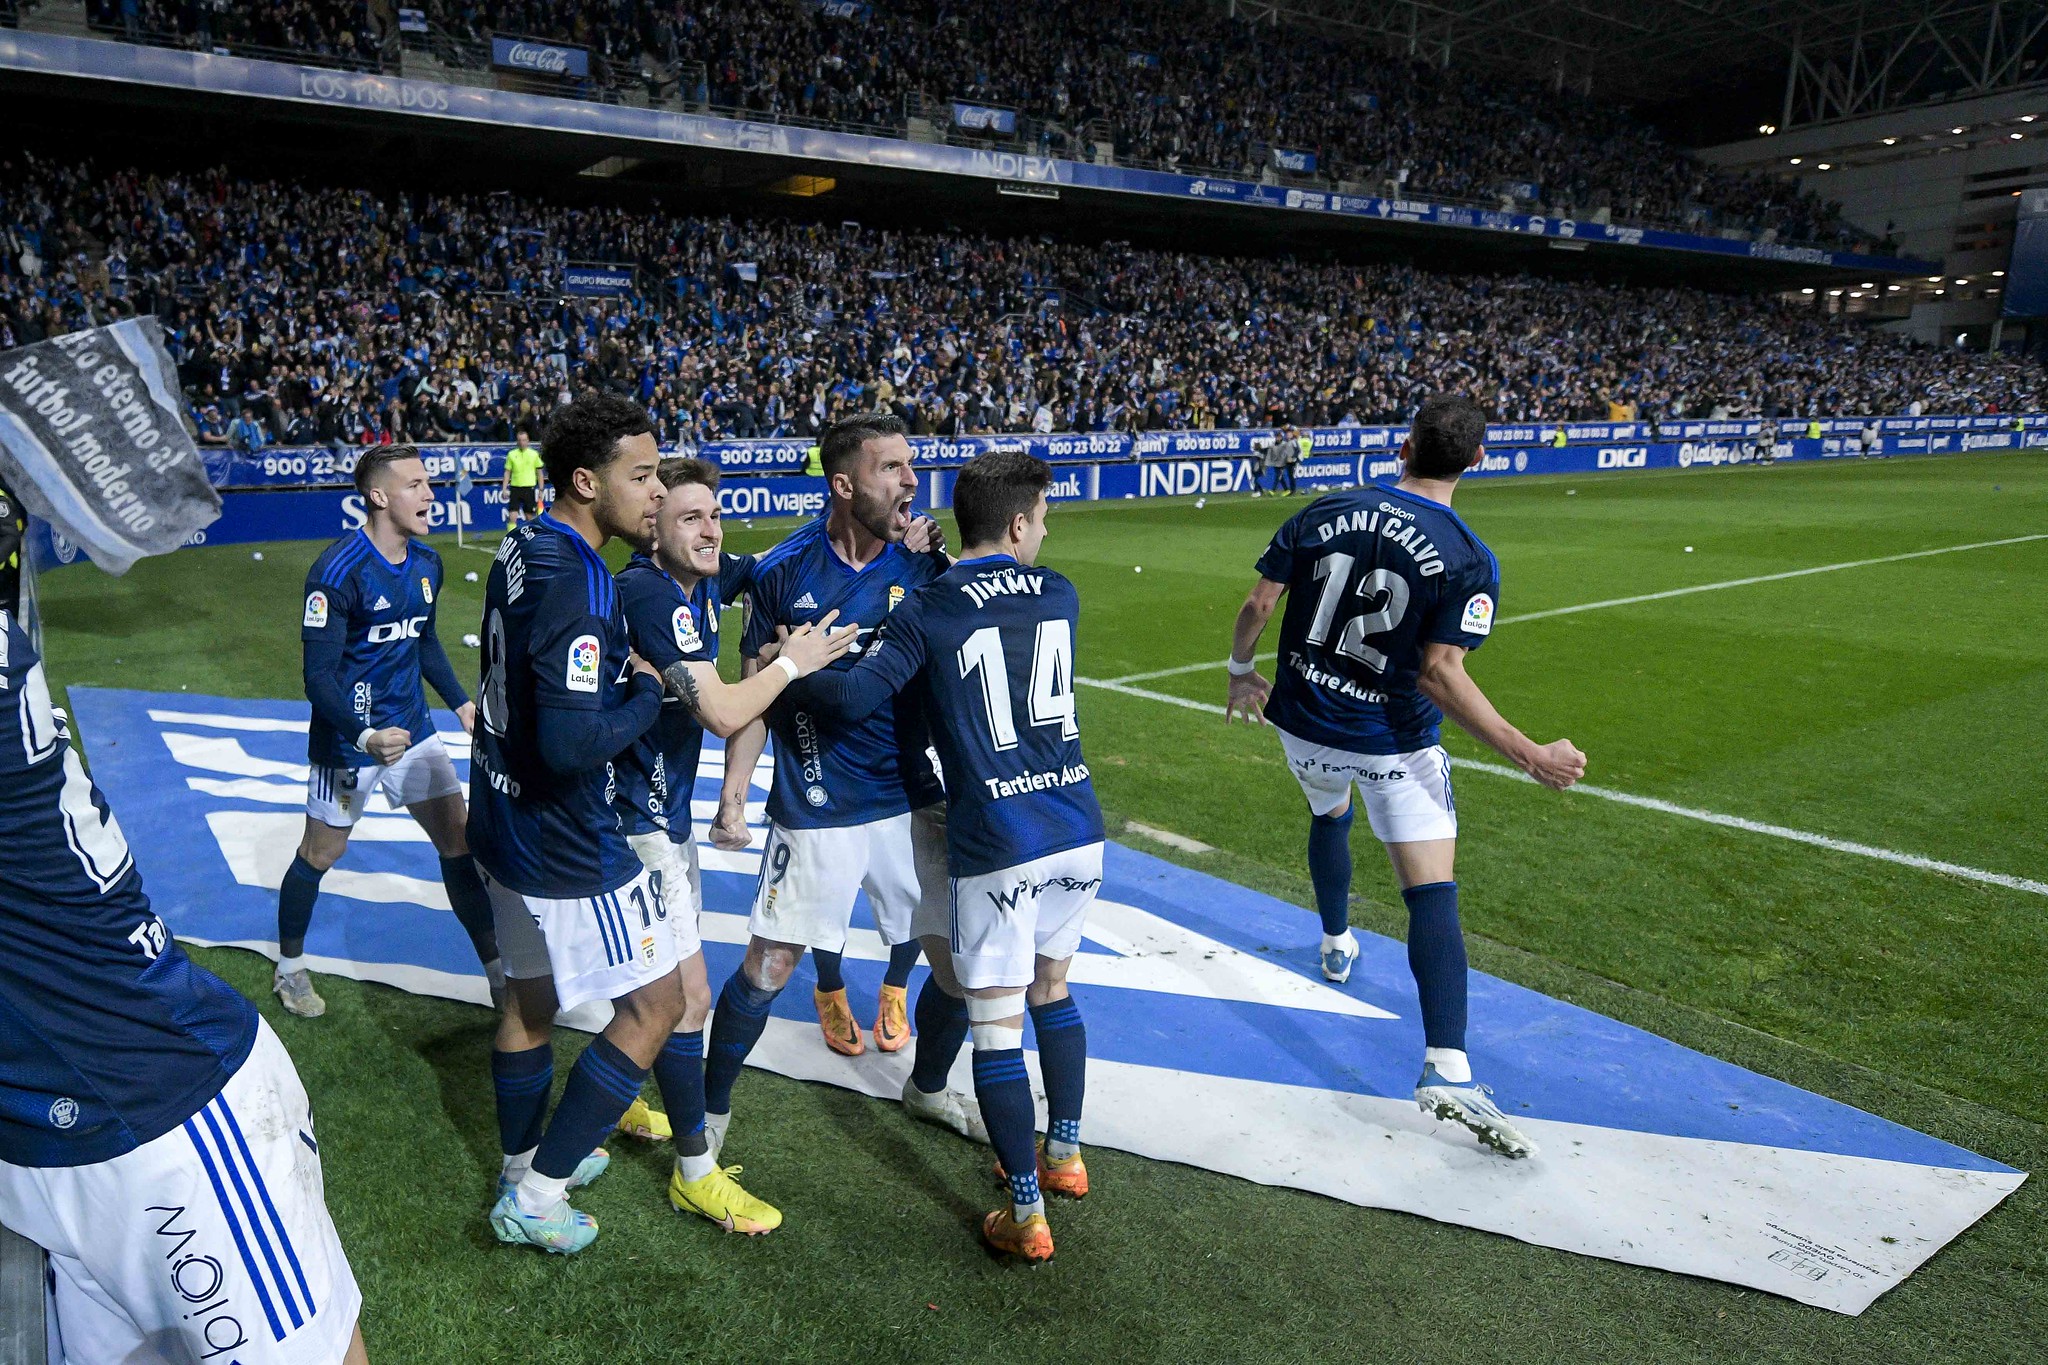 Los jugadores del Real Oviedo celebran un gol